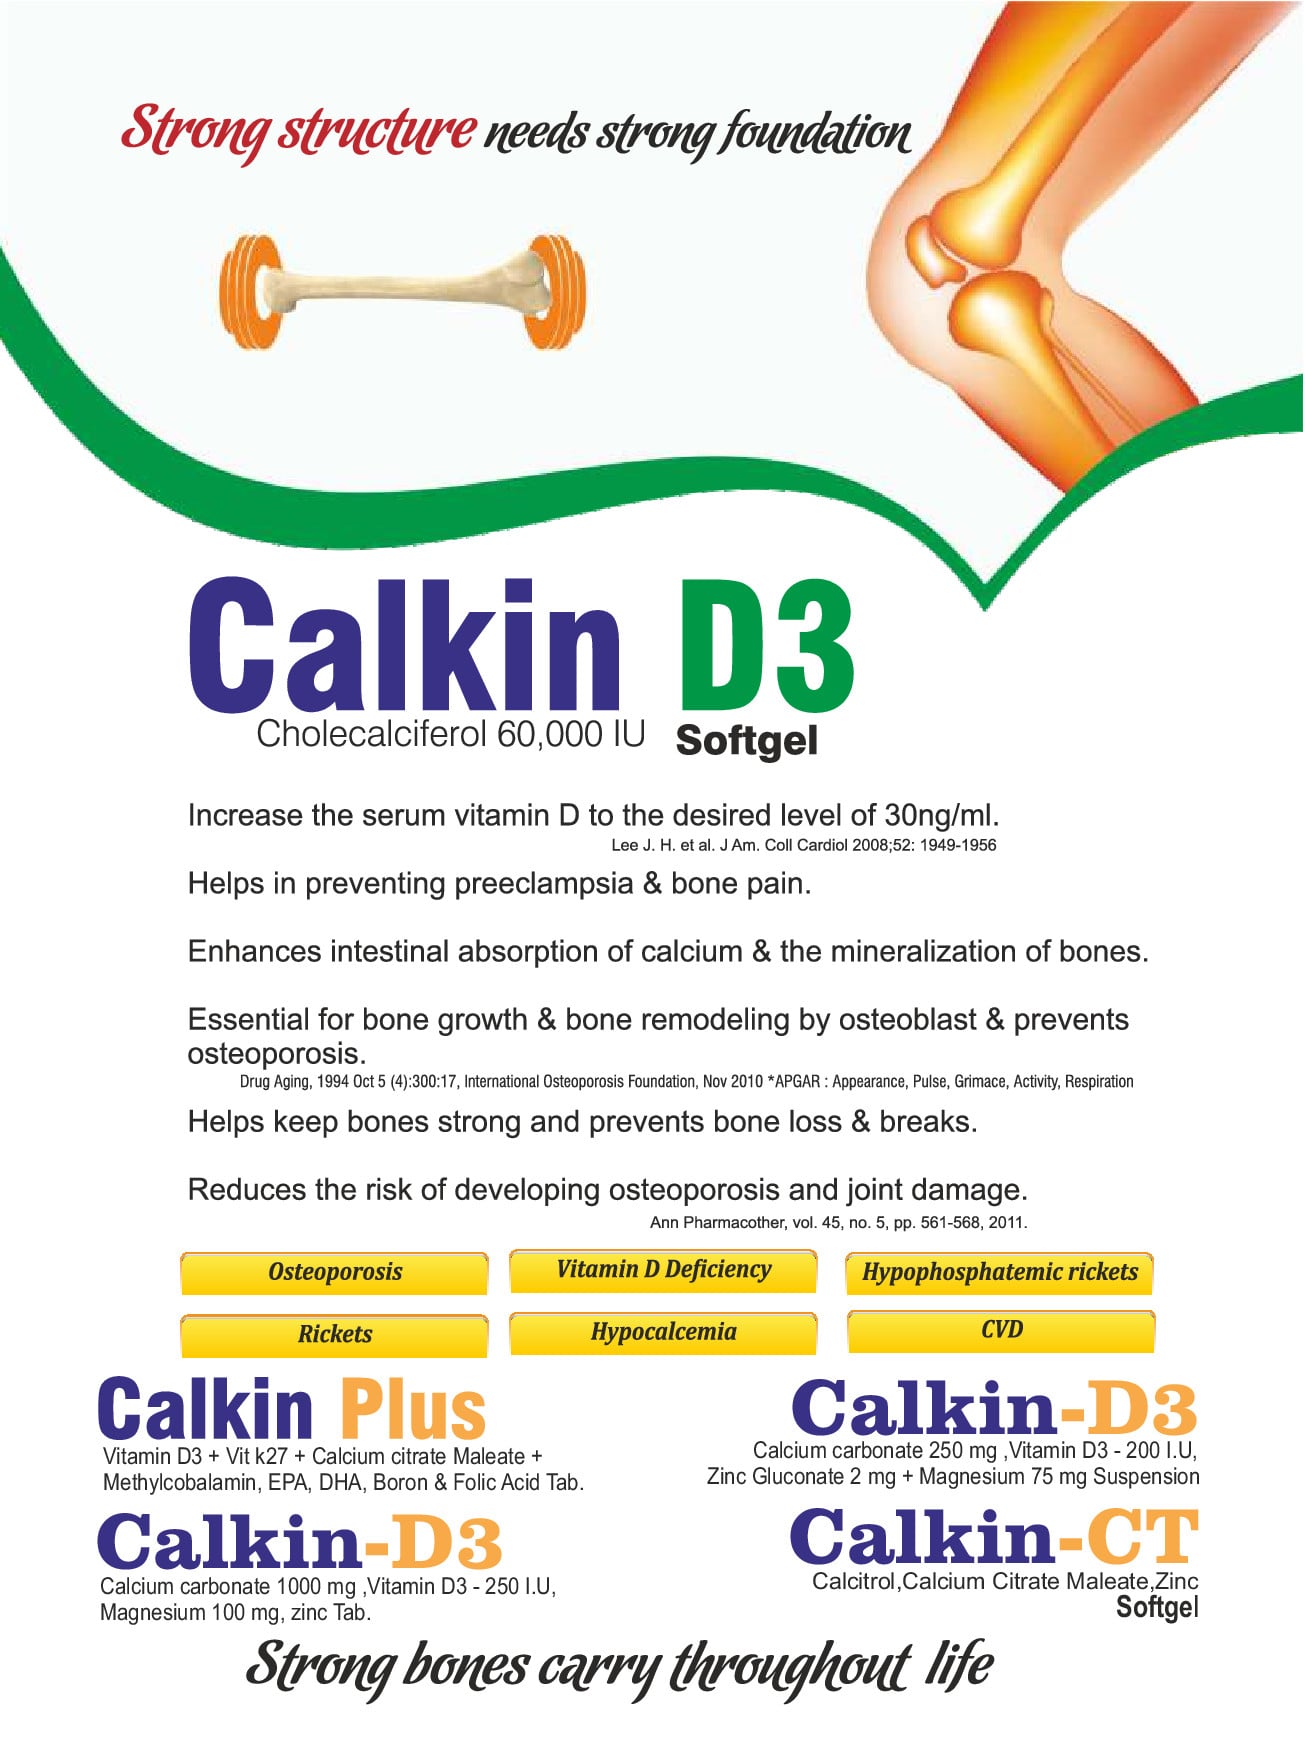 Calkin-D3